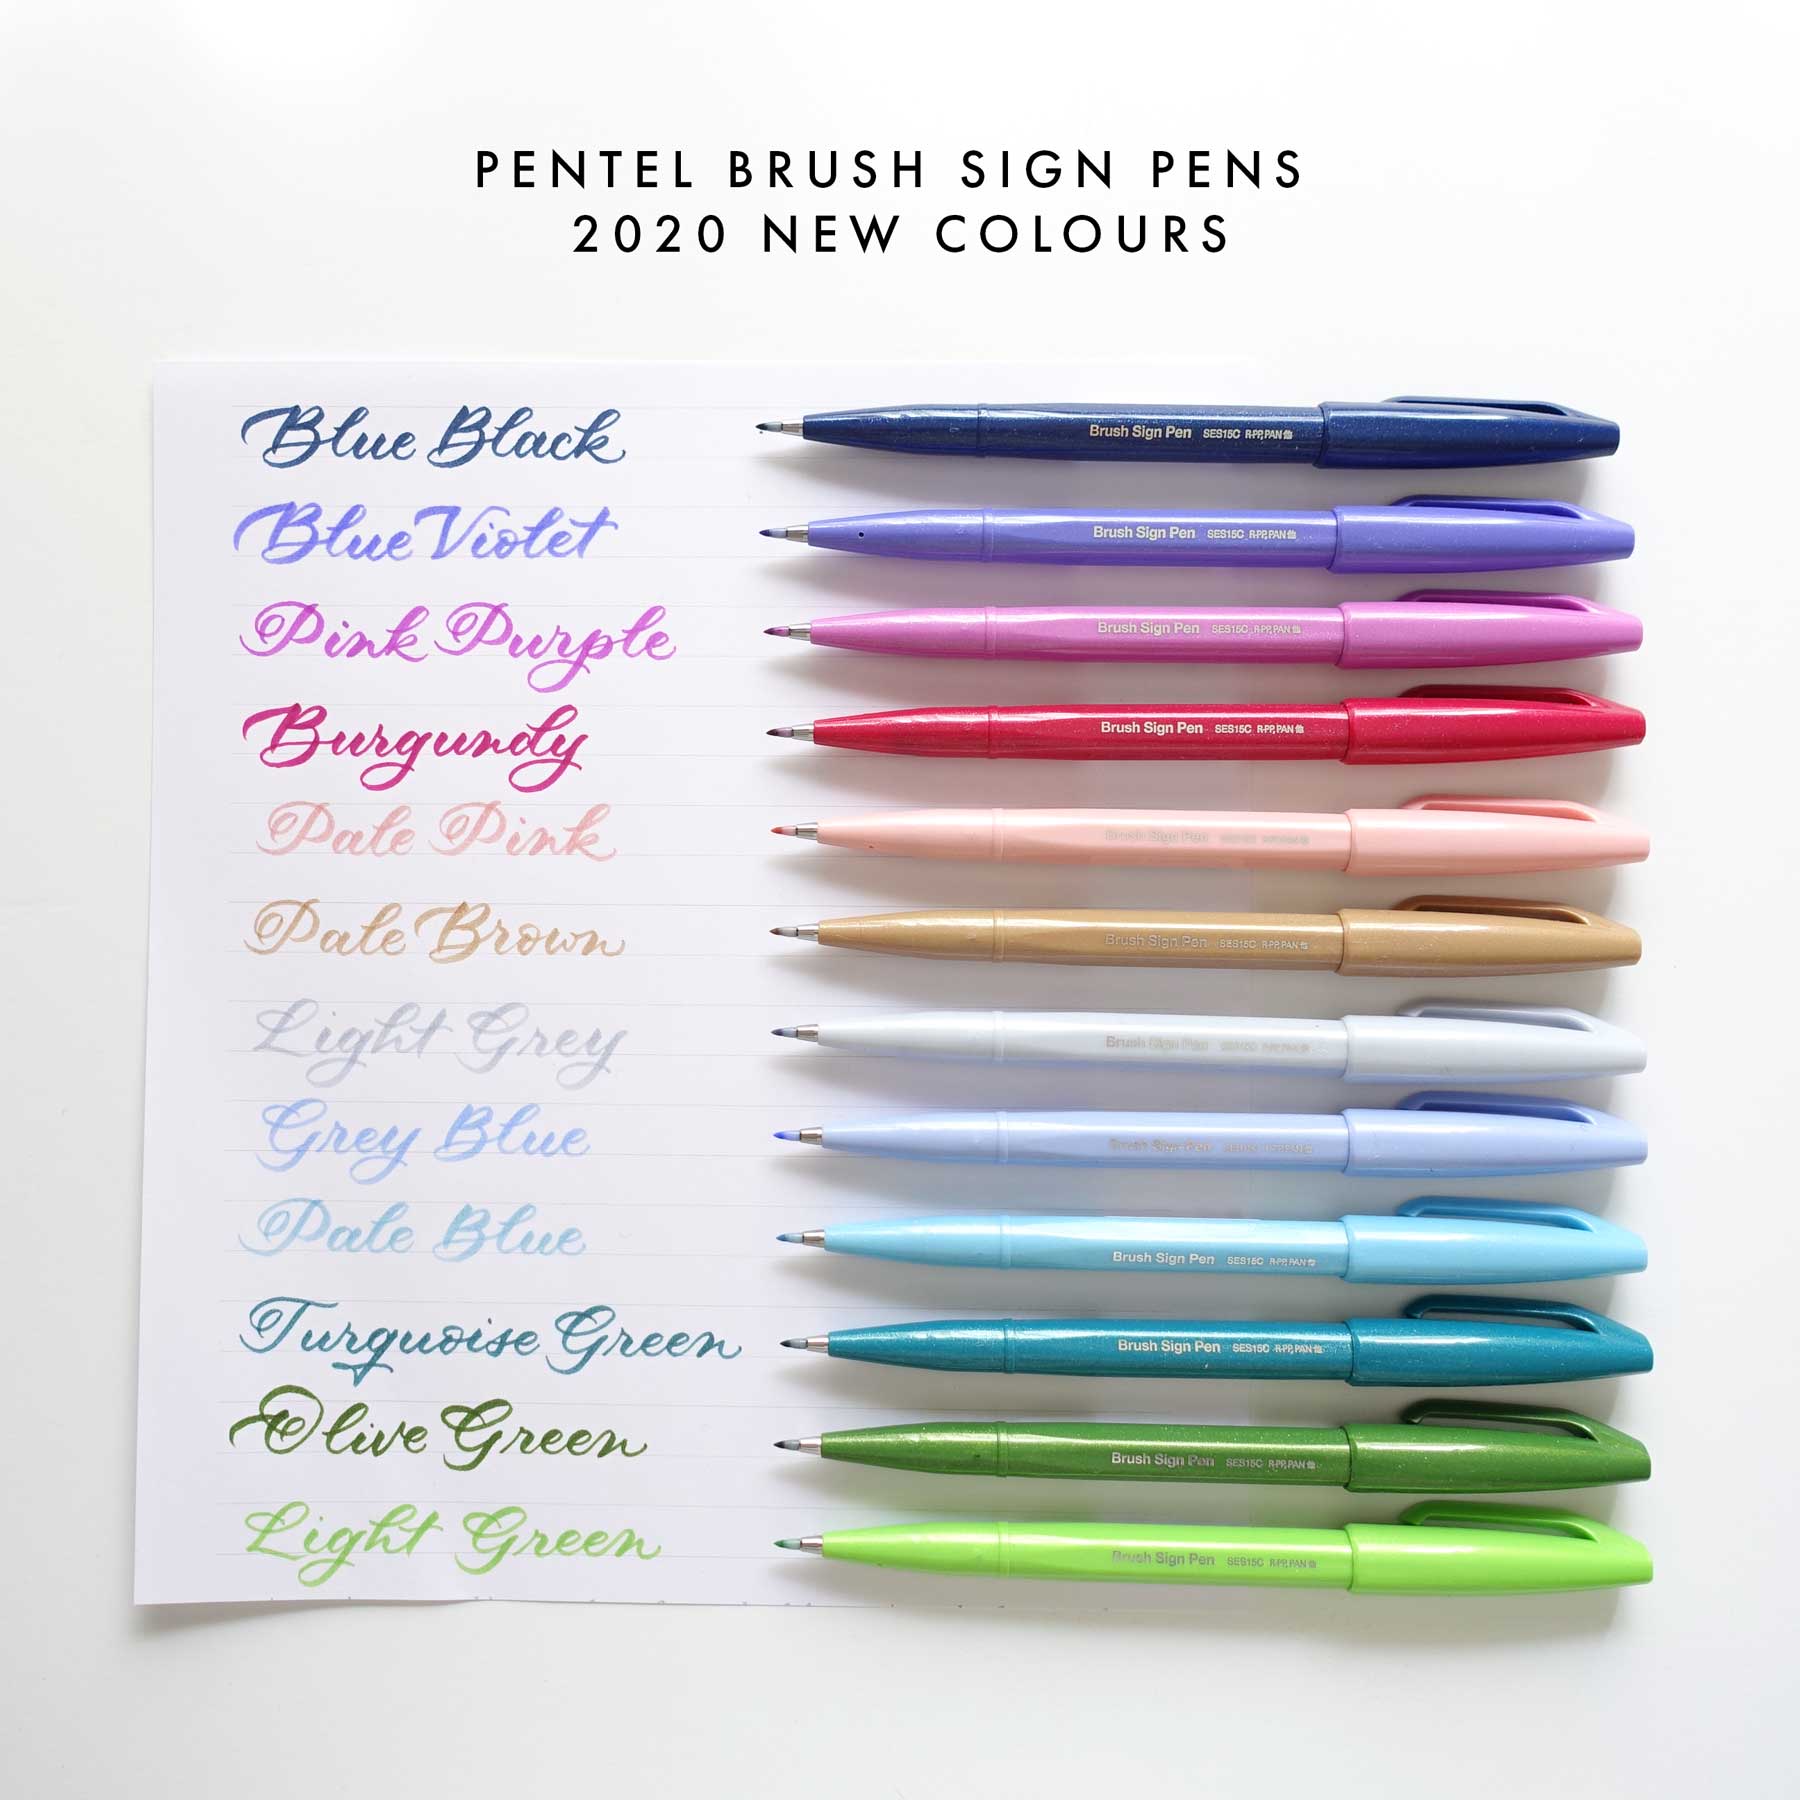 Pentel fude touch brush sign pen full set new pastel colours Australia beginner lettering calligraphy